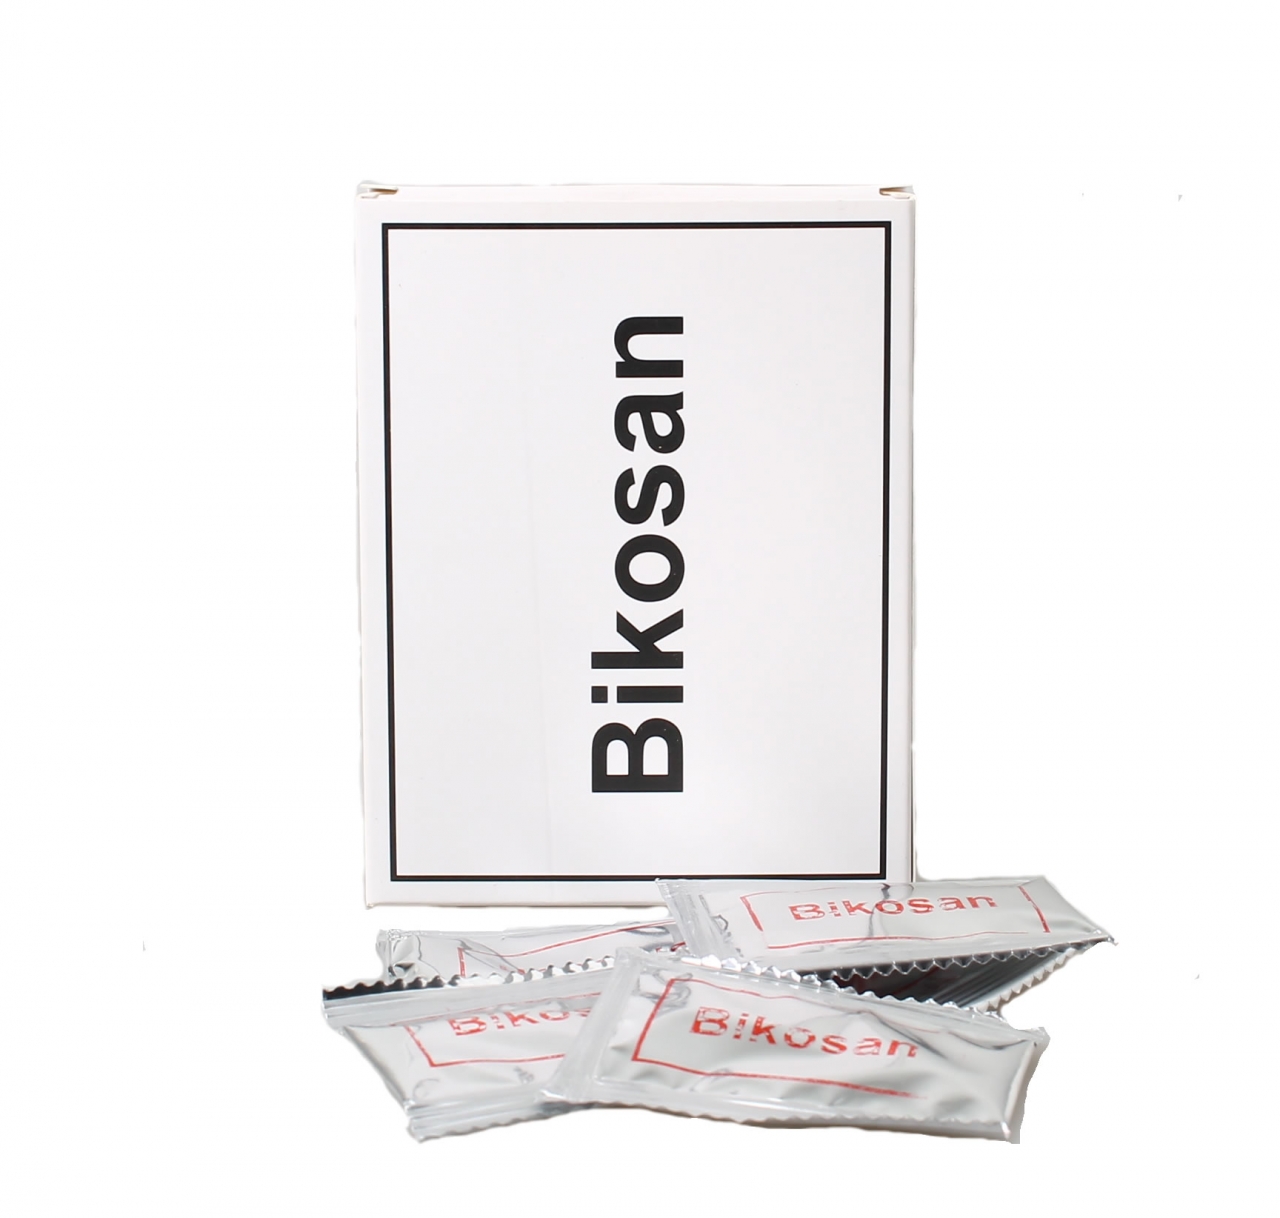 diep Uitleg speling Bikosan 10 mono-doseringen mondspoeling ⋆ Bik & Bik NL